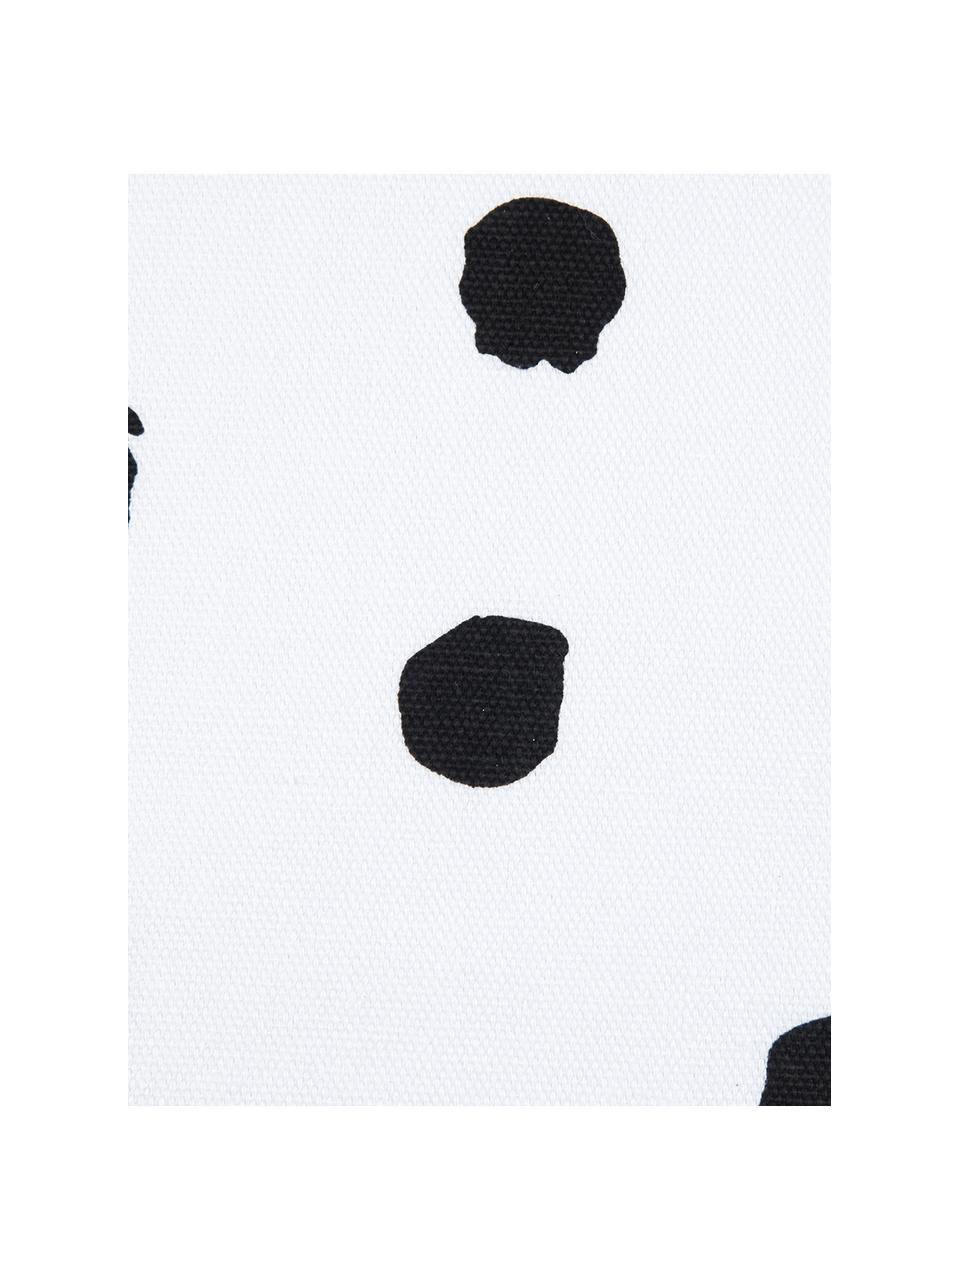 Gestippelde kussenhoes Riley in zwart/wit, 100% katoen, Zwart, wit, B 40 x L 40 cm